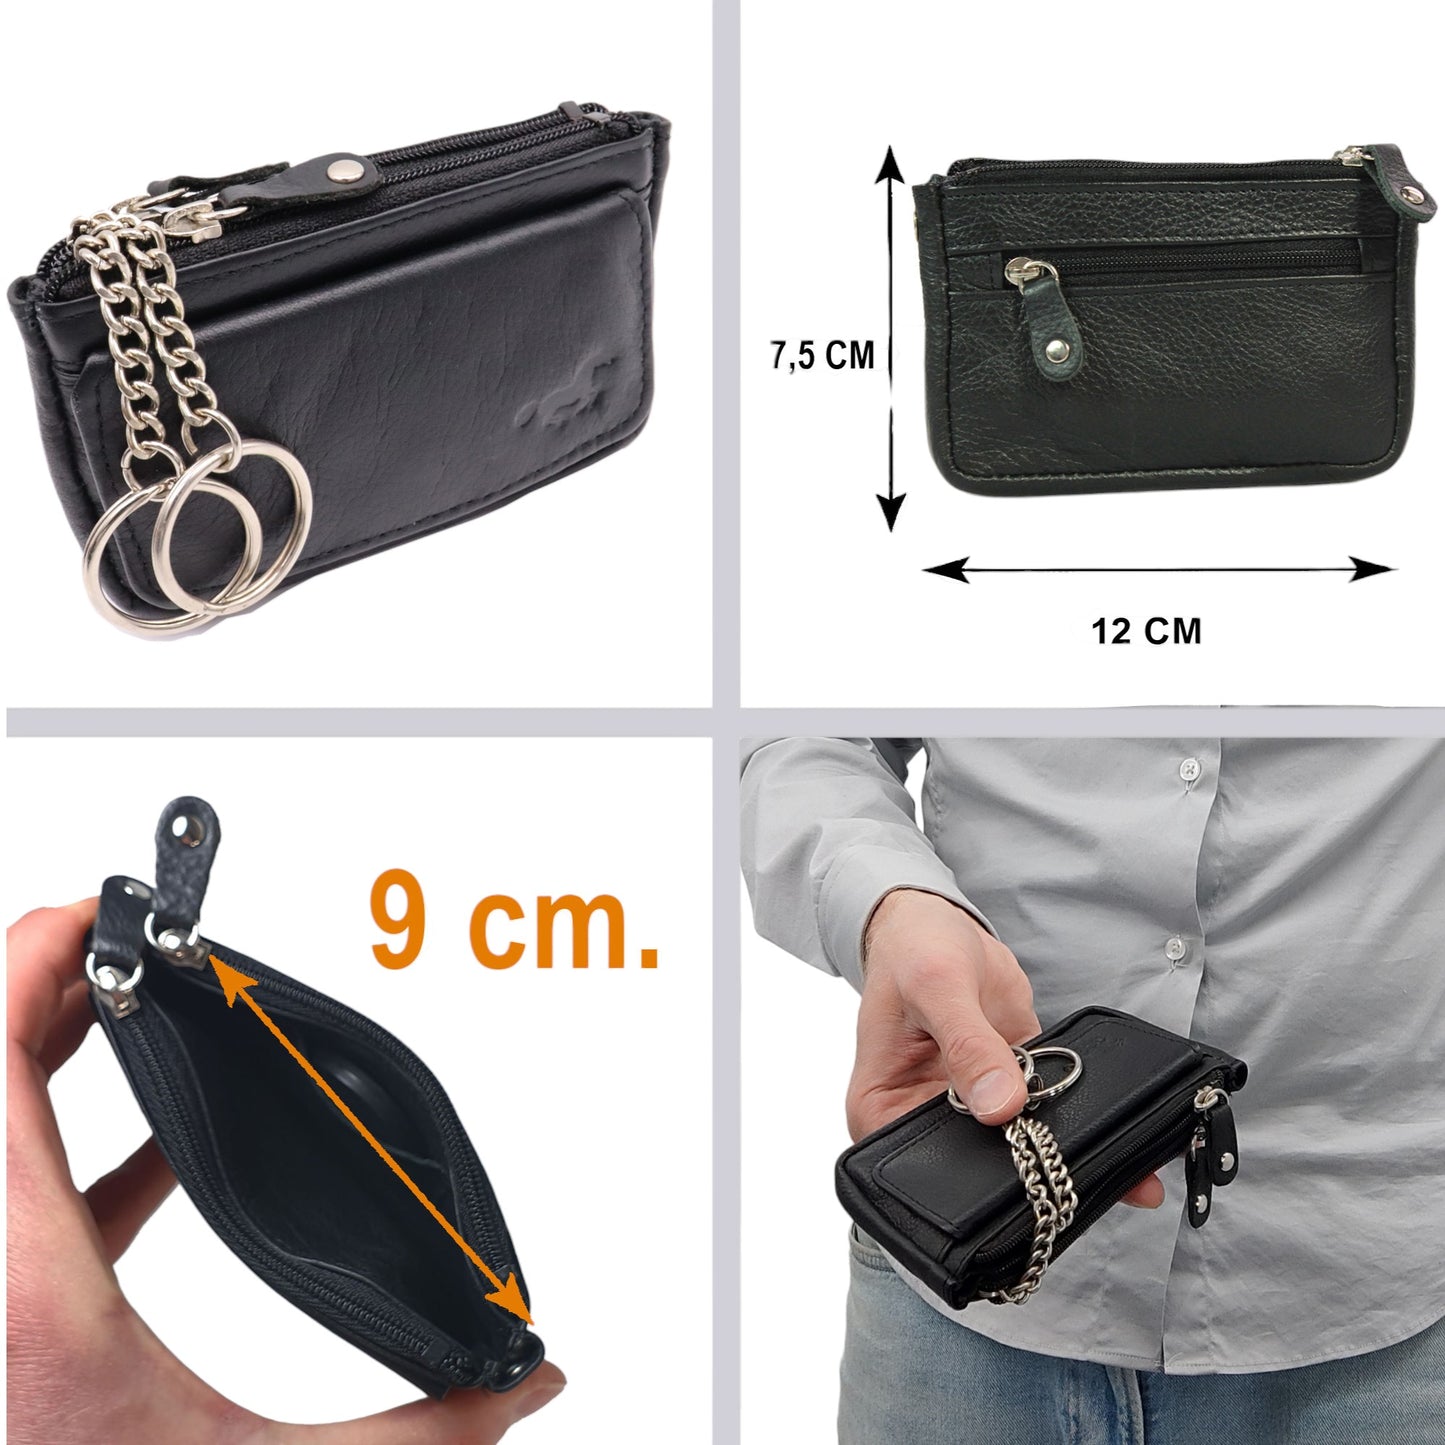 Zweier-Pack Schlüsseletuis und Finder-Tracker – grün/schwarz – Vorteilspaket – Schlüsseletuis für Damen und Herren